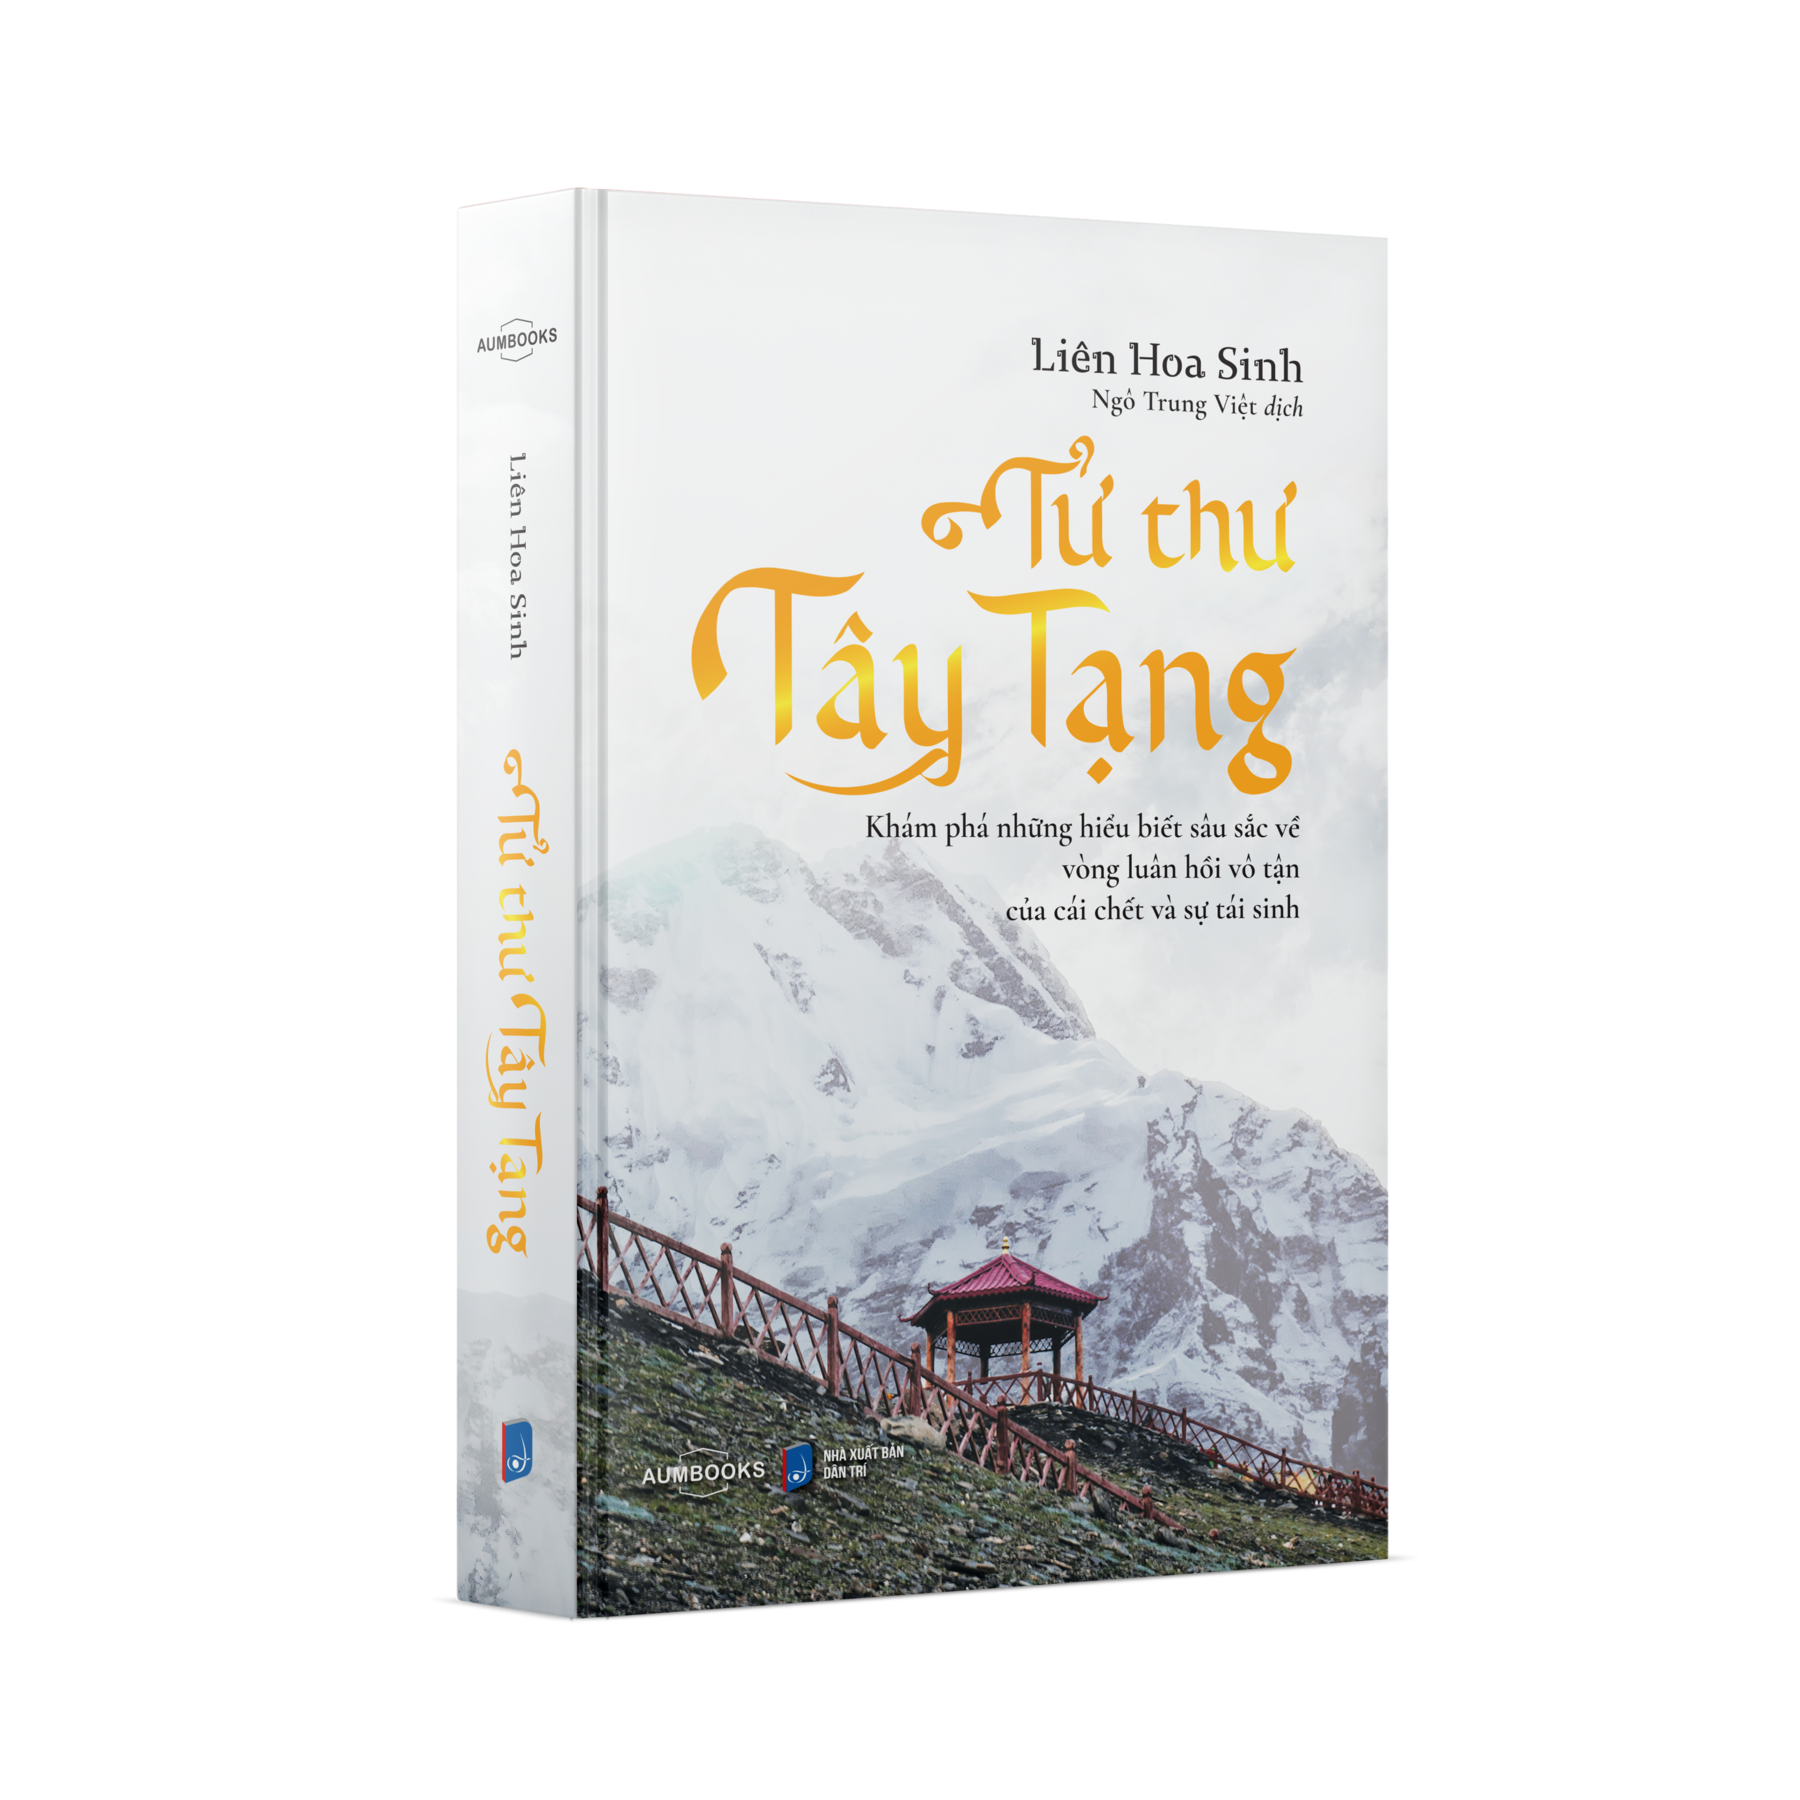 Sách Tử Thư Tây Tạng - Khám phá những hiểu biết sâu sắc về vòng luân hồi vô tận của cái chết và tái sinh - Hiệu Sách Genbooks, bìa mềm in màu